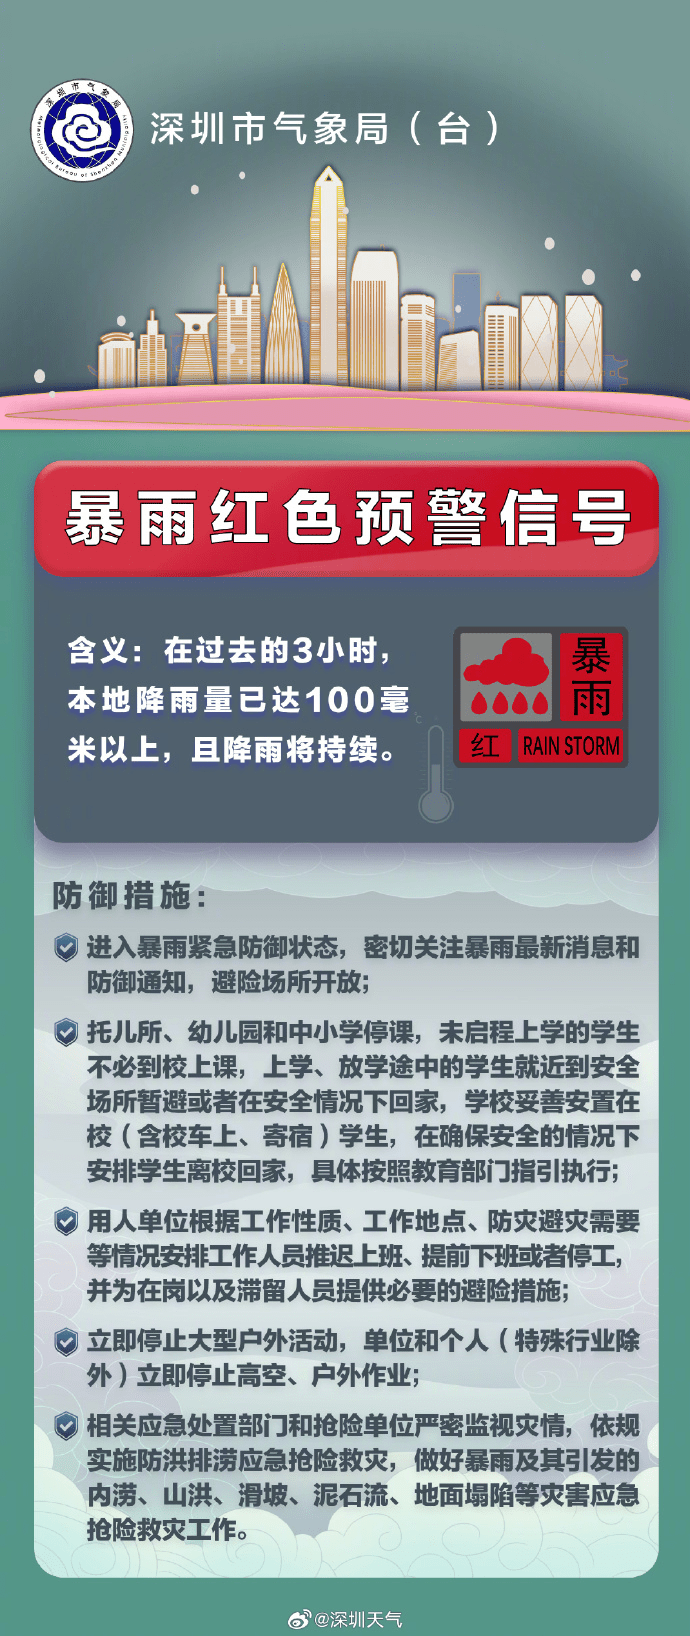 深圳分区发布暴雨红色预警。